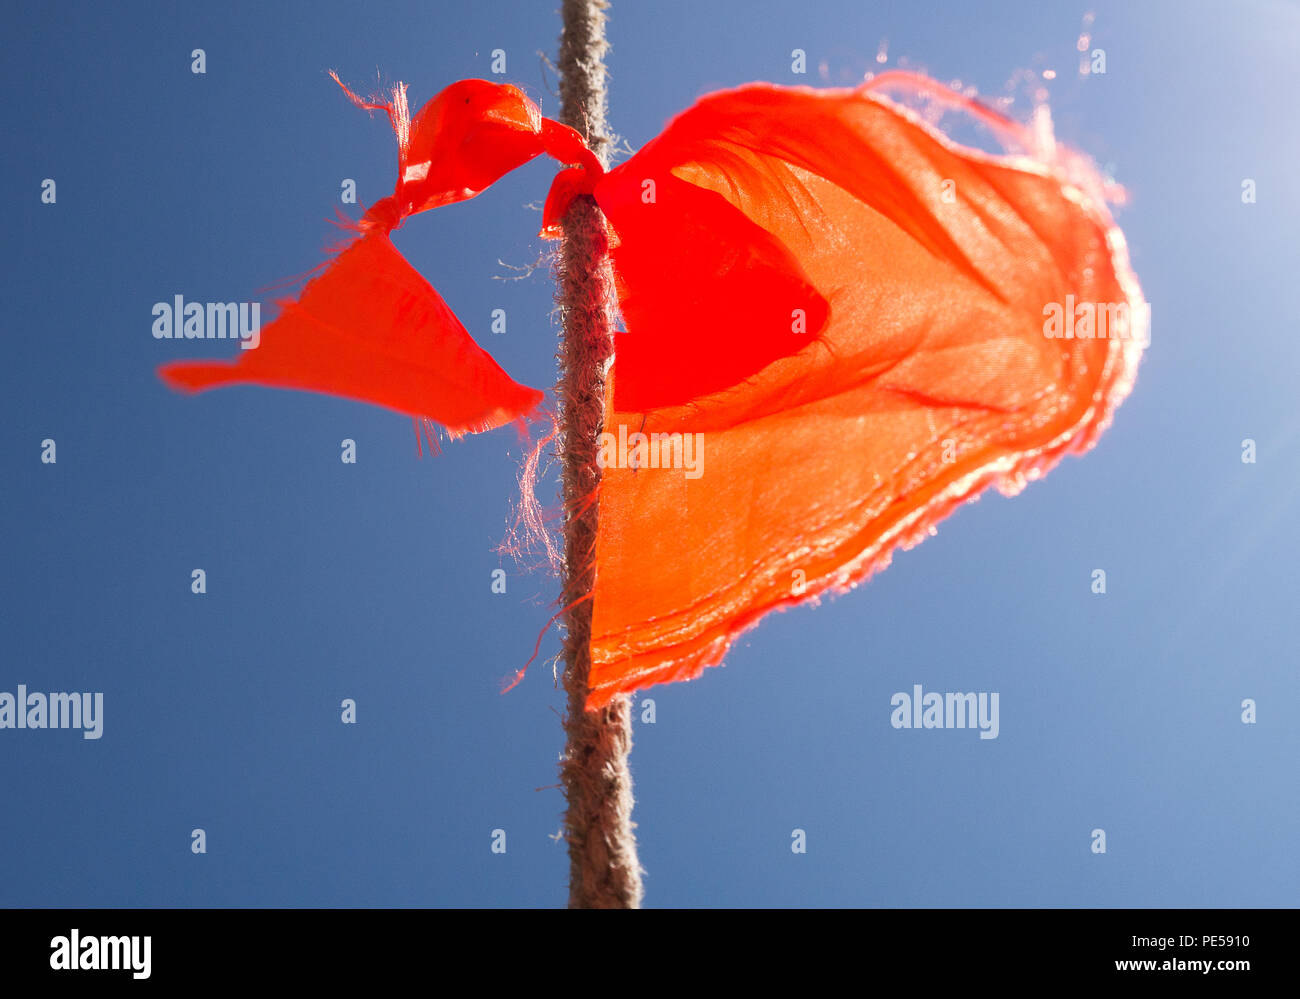 Immagine a colori di un arancione sfilacciata bunting bandiera su una fune, colpo dal basso contro un cielo blu chiaro Foto Stock